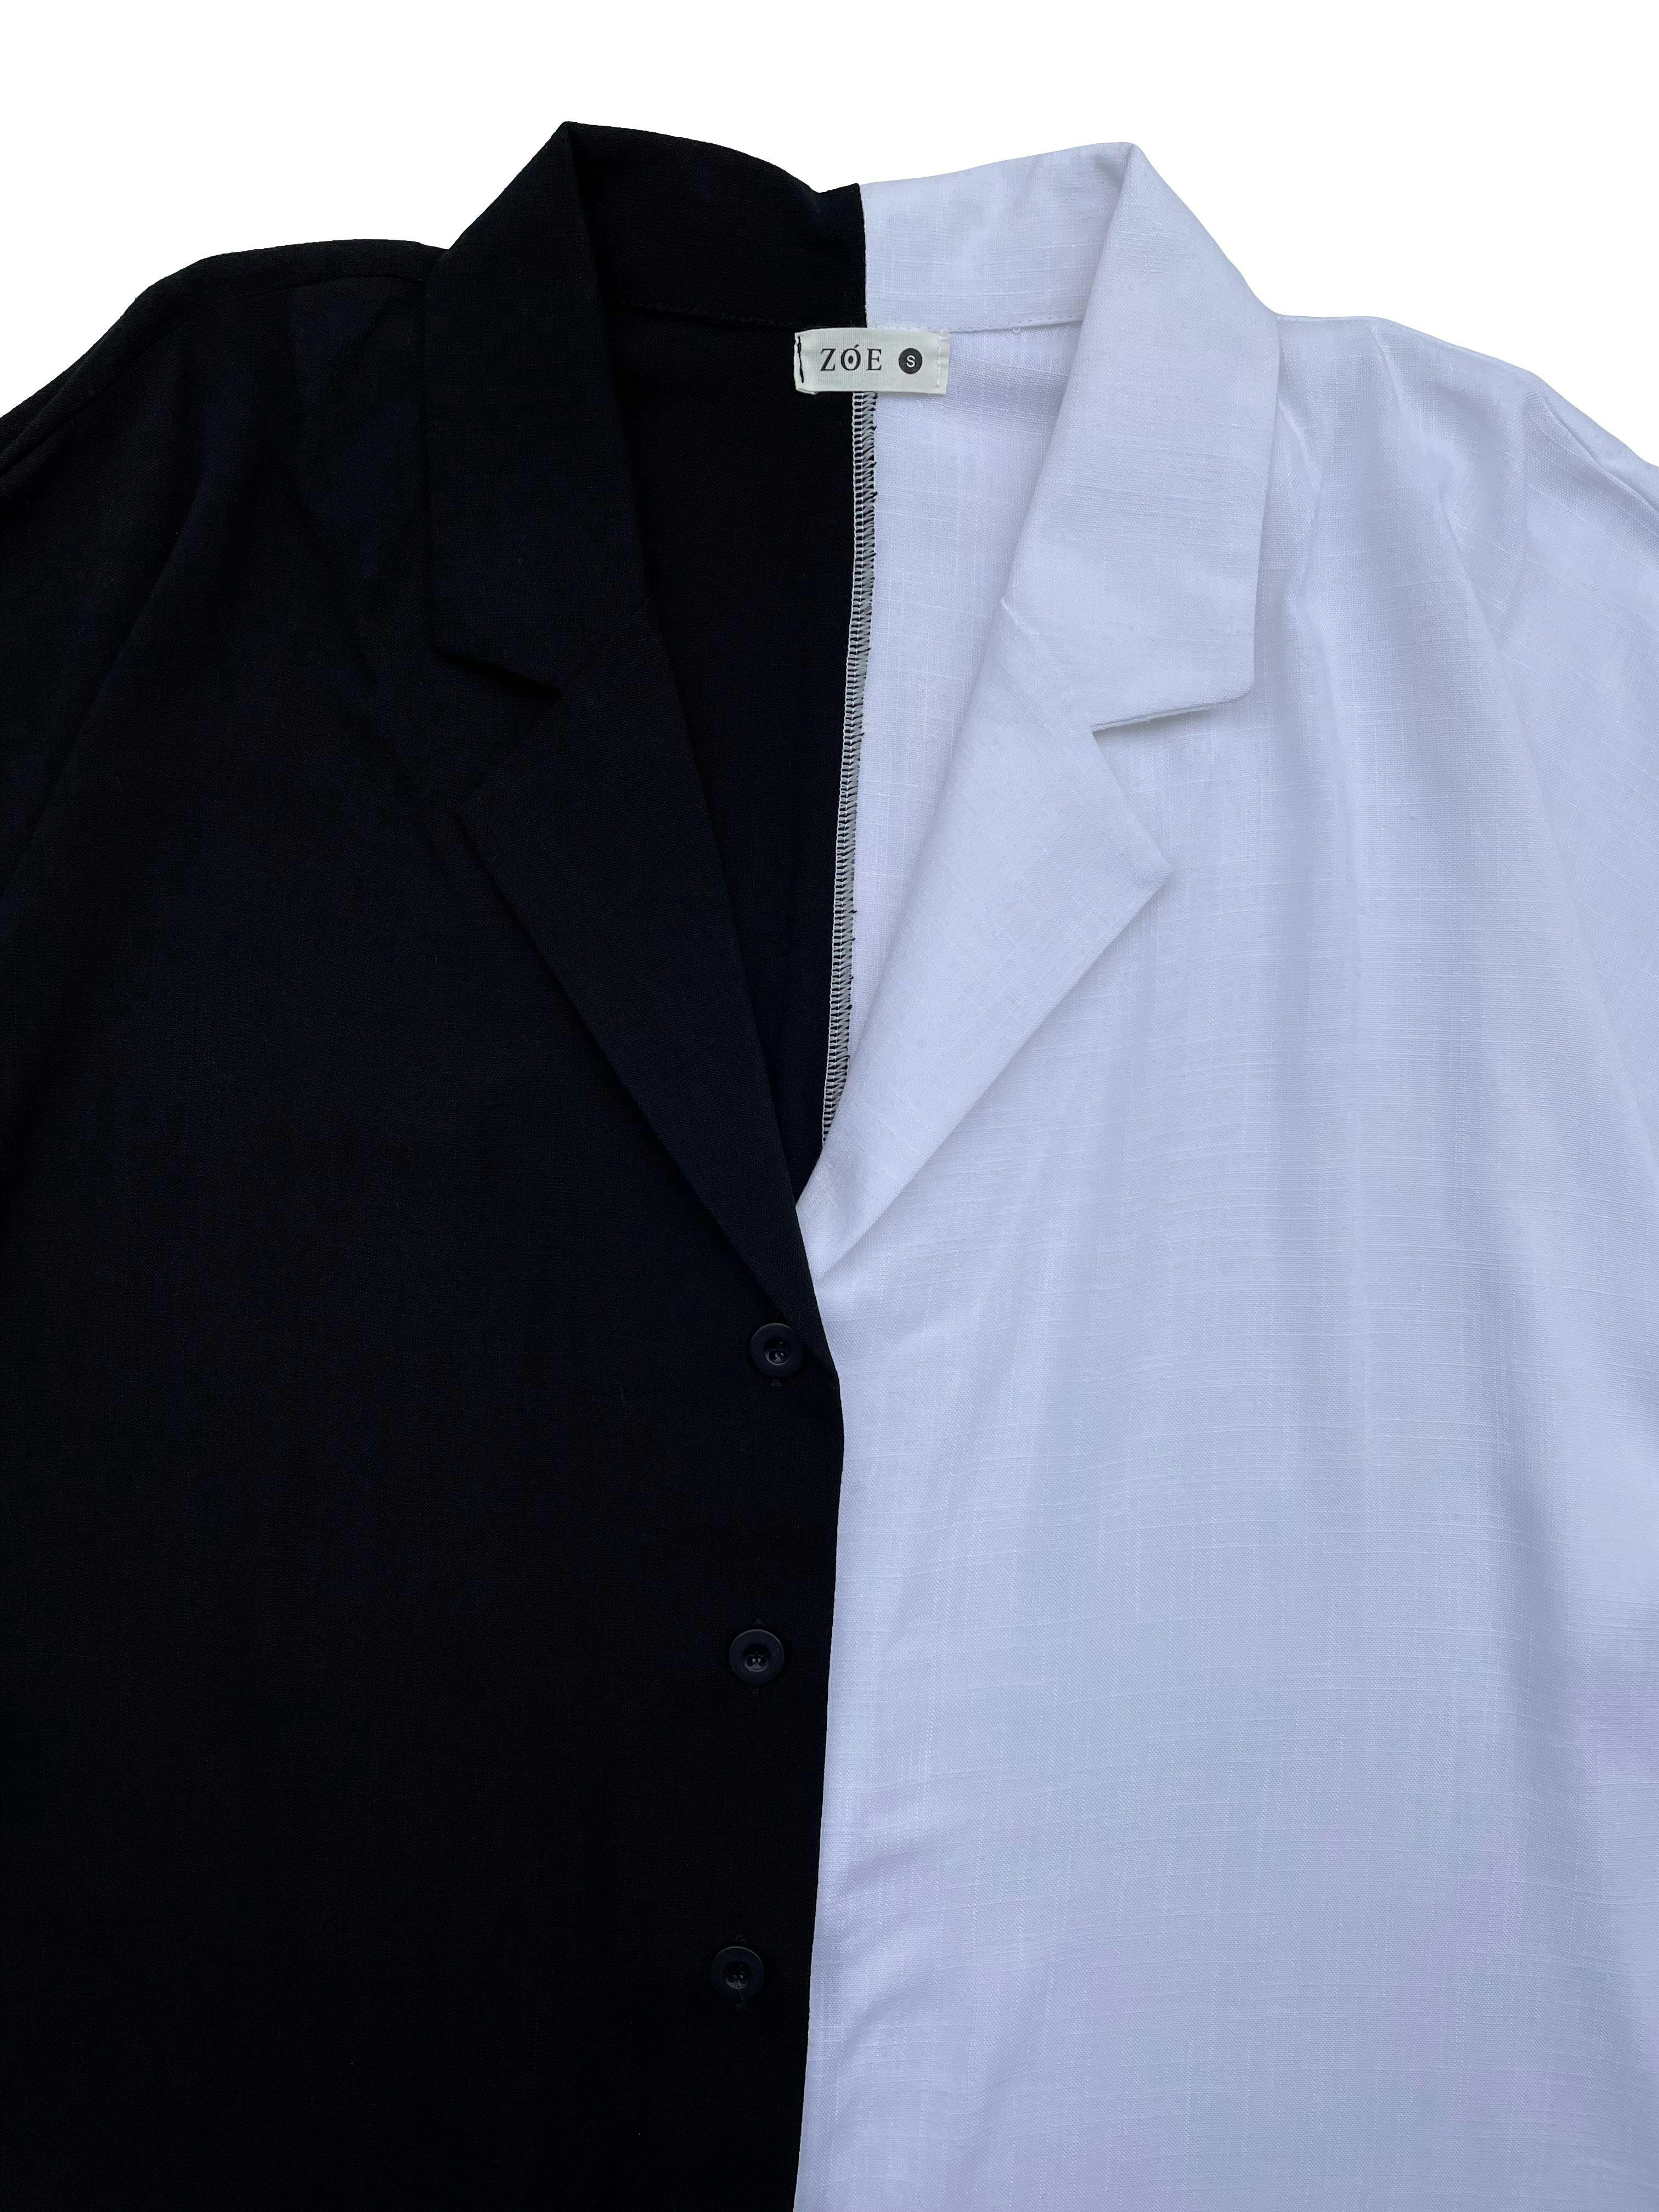 Blusa oversized Zoe color block blanco y negro, tela con caída, cuello cubano y botones. Busto 120cm Largo 60cm